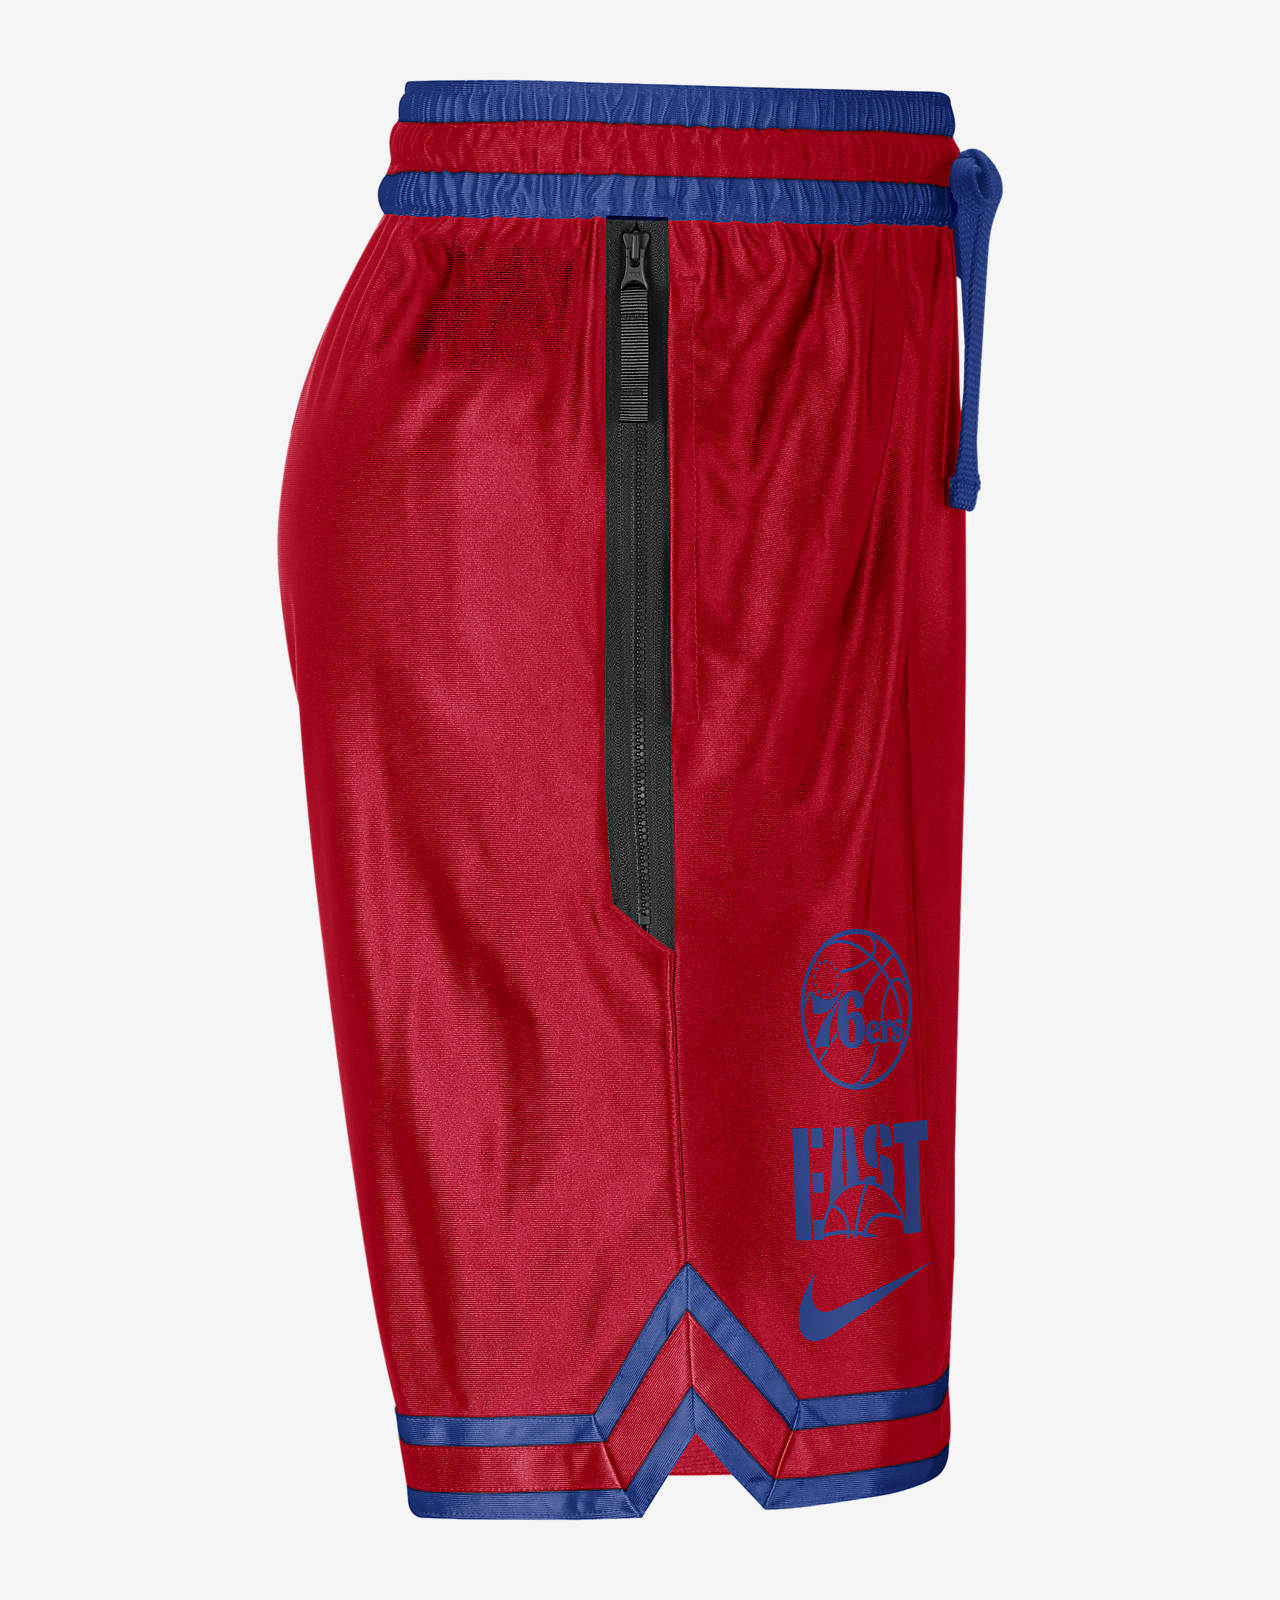 Philadelphia Courtside Men's Nike Dri-FIT NBA Shorts.